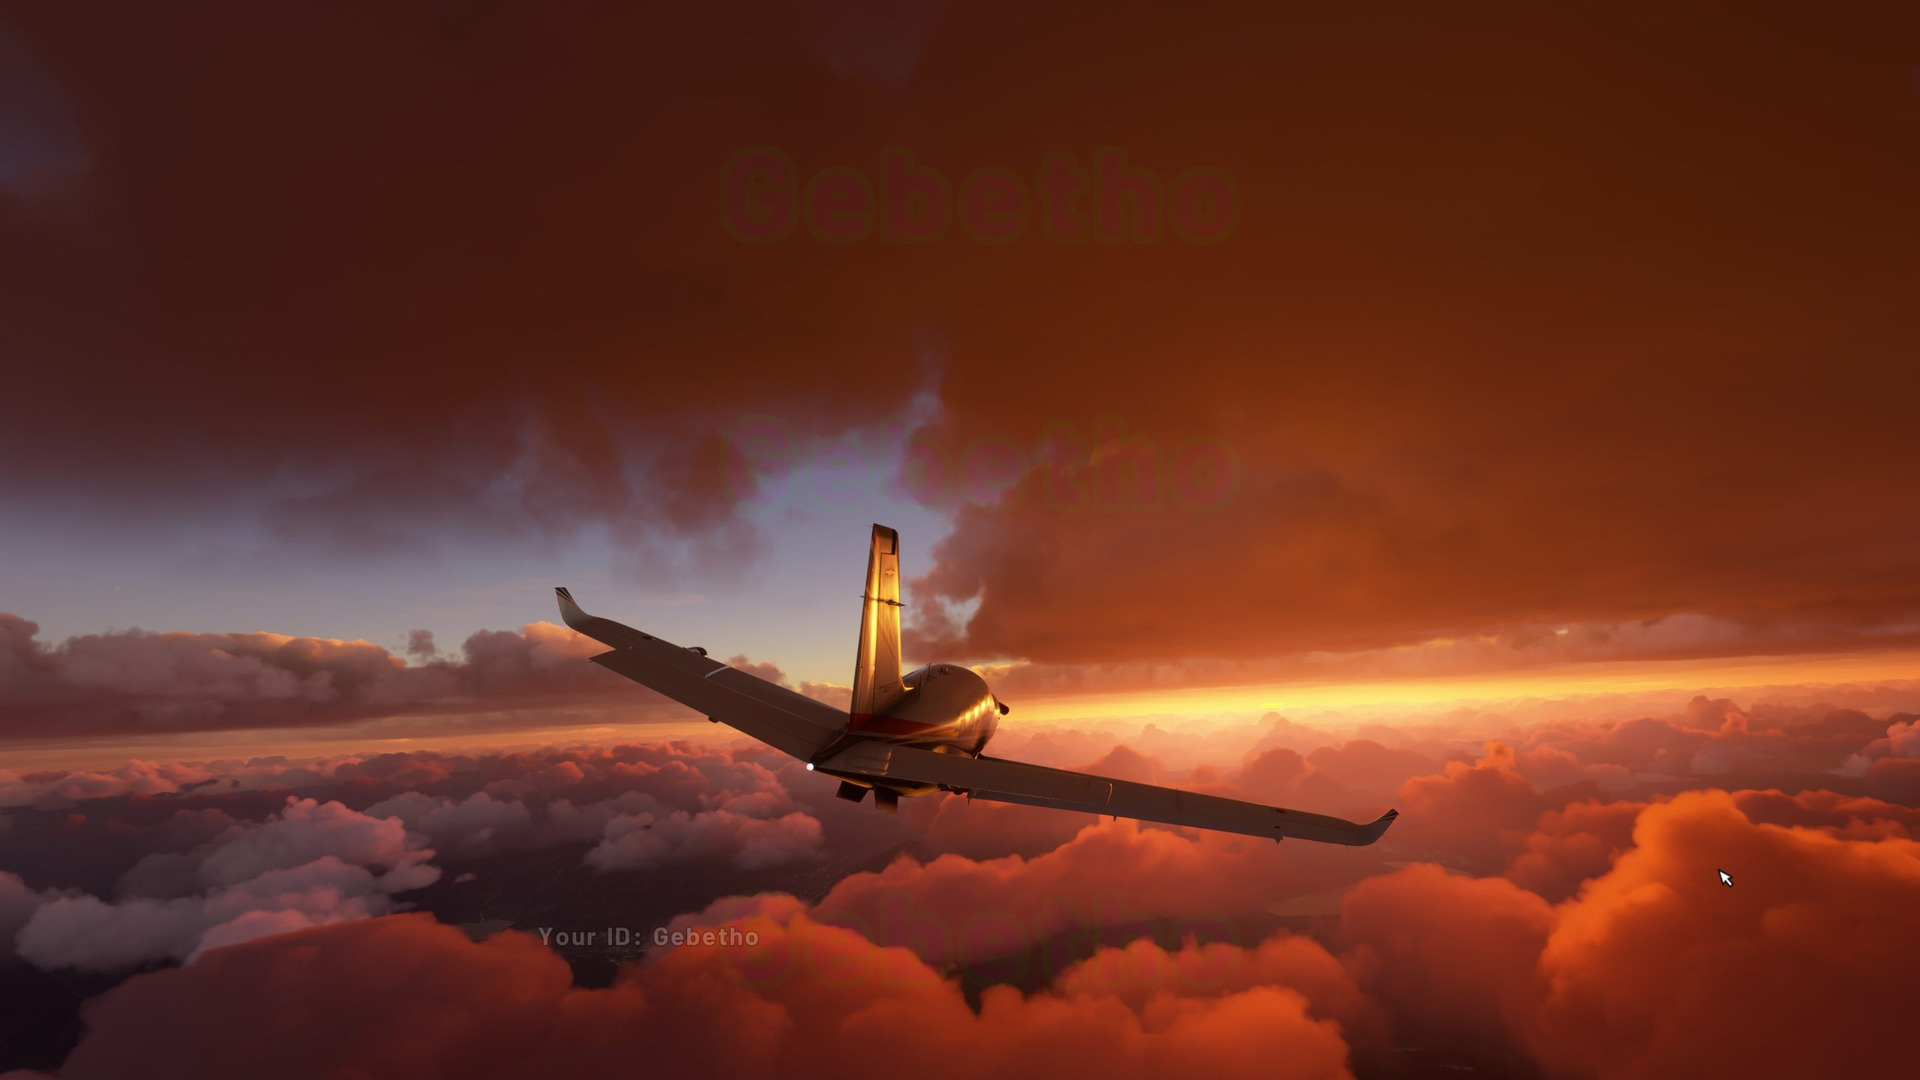 《微软飞行模拟》新截图和视频展示 体积云太美